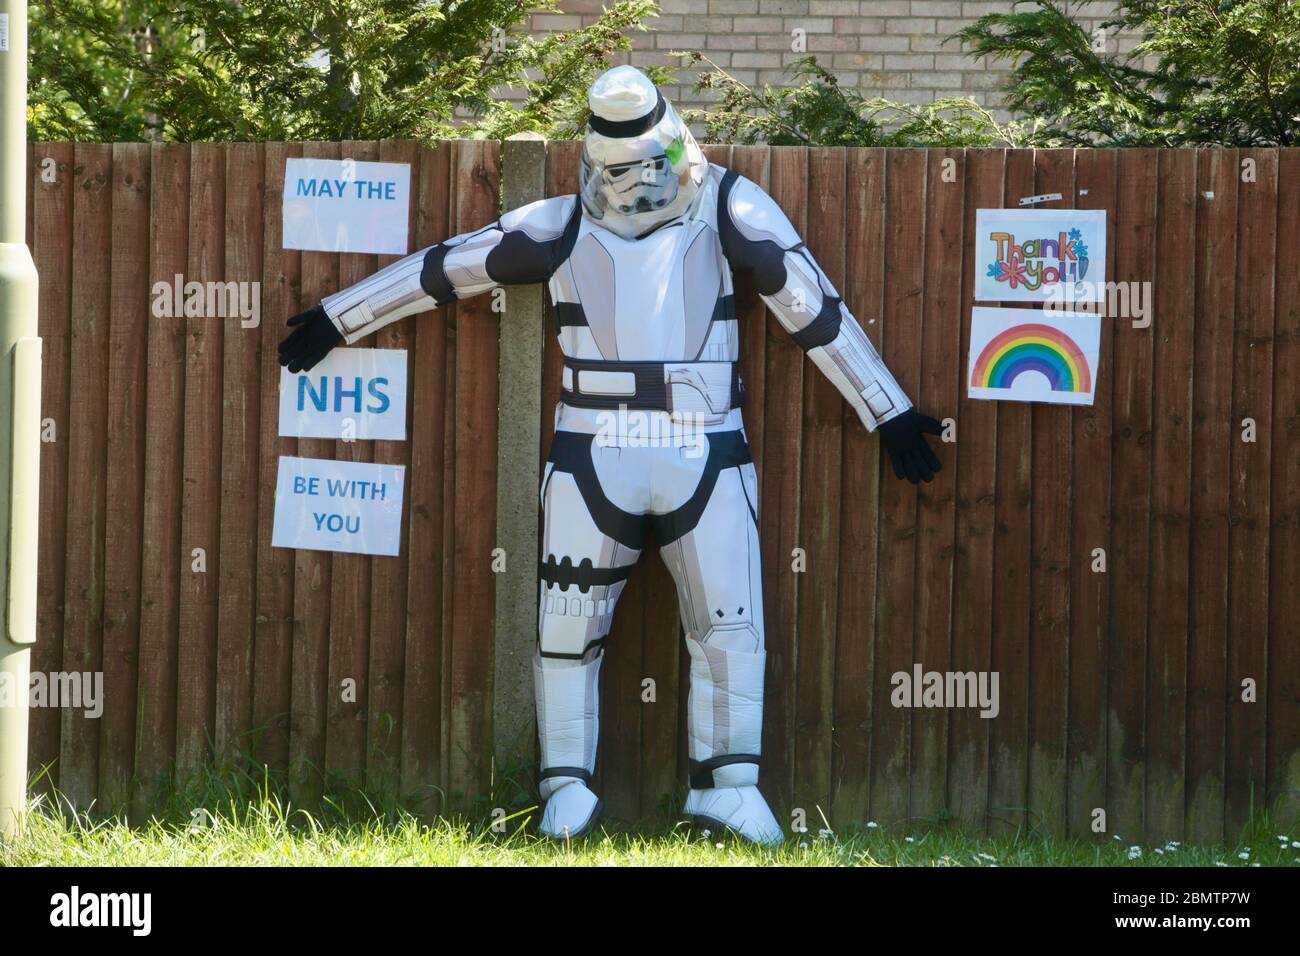 Star Wars figura durante il blocco di Coronavirus - maggio il NHS essere con voi! Dorset UK Maggio 2020 Foto Stock